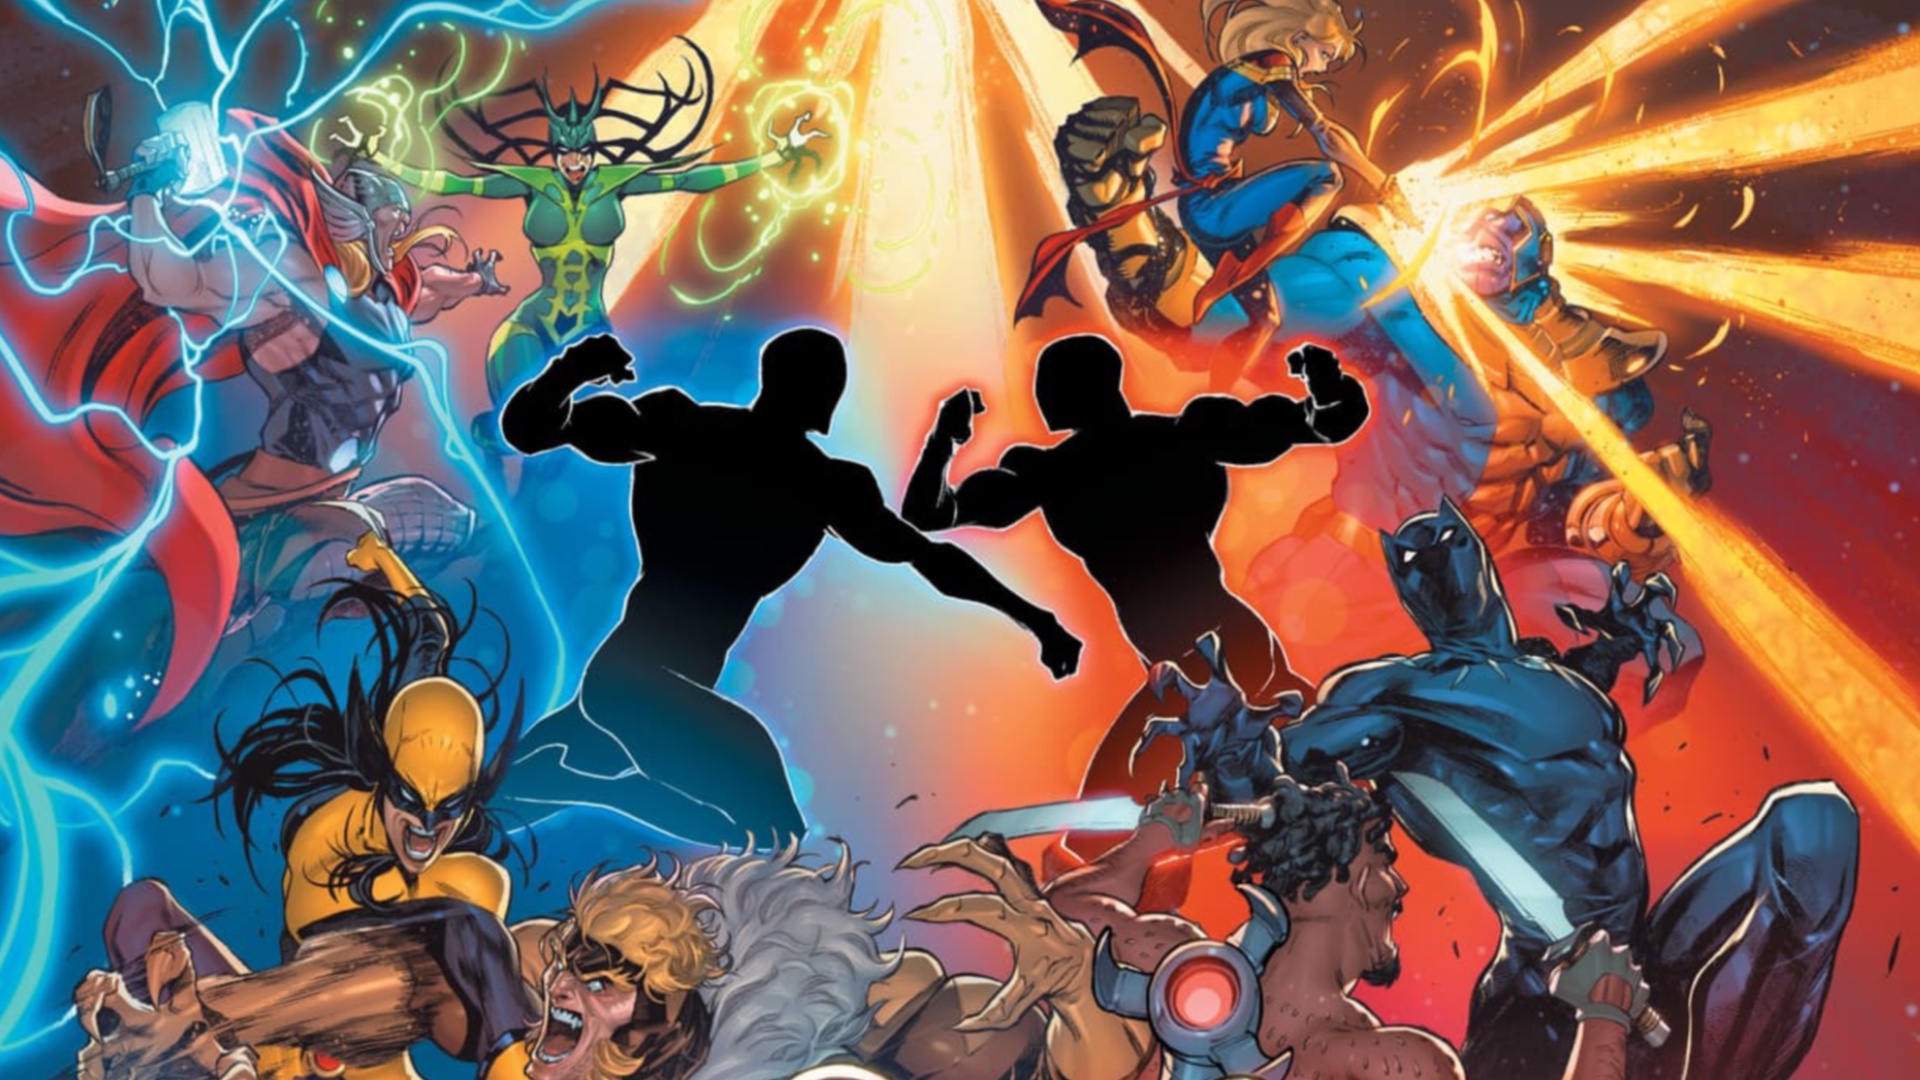 يقاتل الأبطال المتعددون حول شخصين متزايدين في العمل الفني من لعبة Marvel Multiverse لعب الأدوار